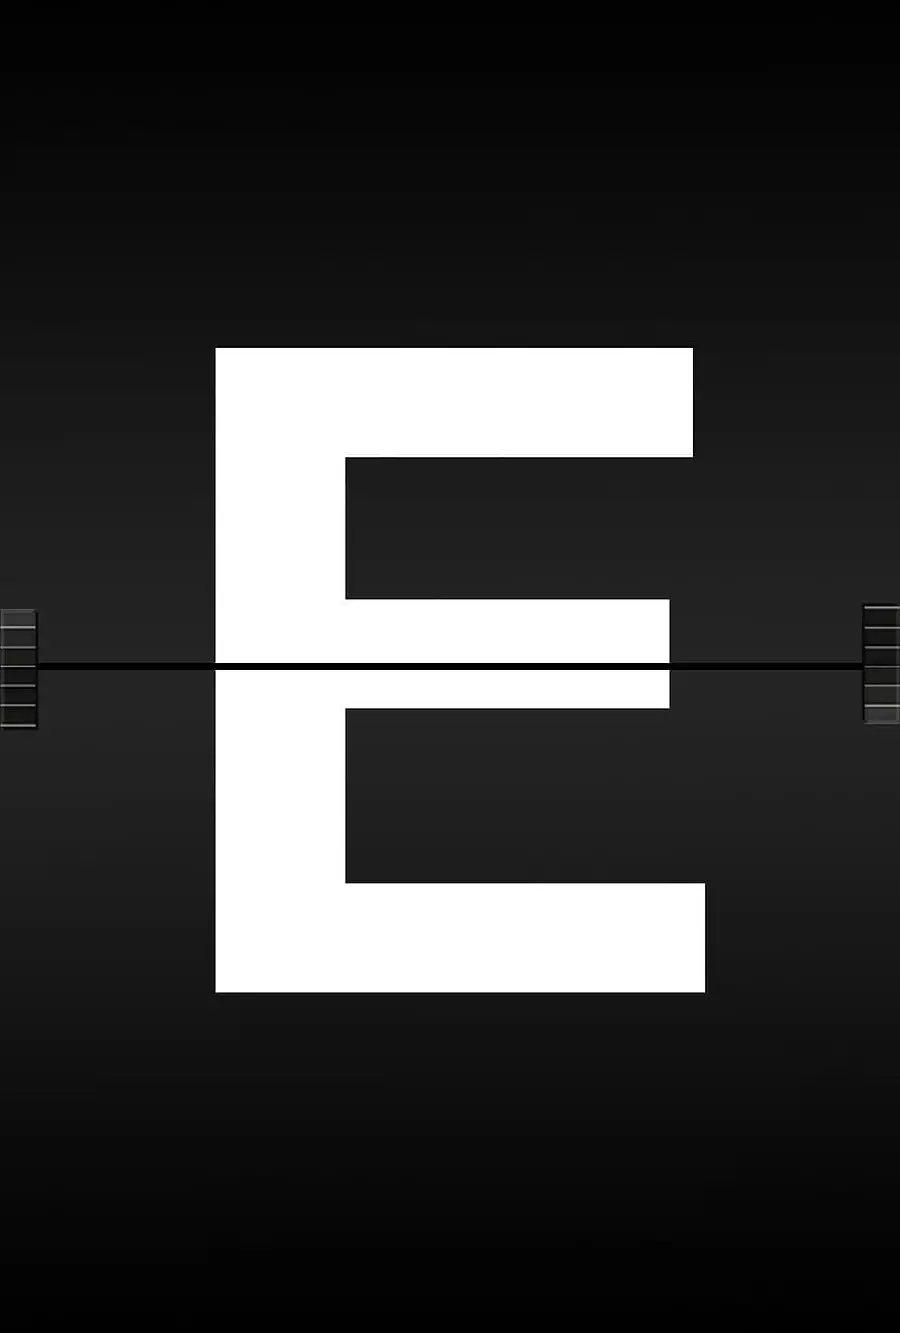 دانلود عکس حرف E انگلیسی با فرم ساده و شیک برای الگو